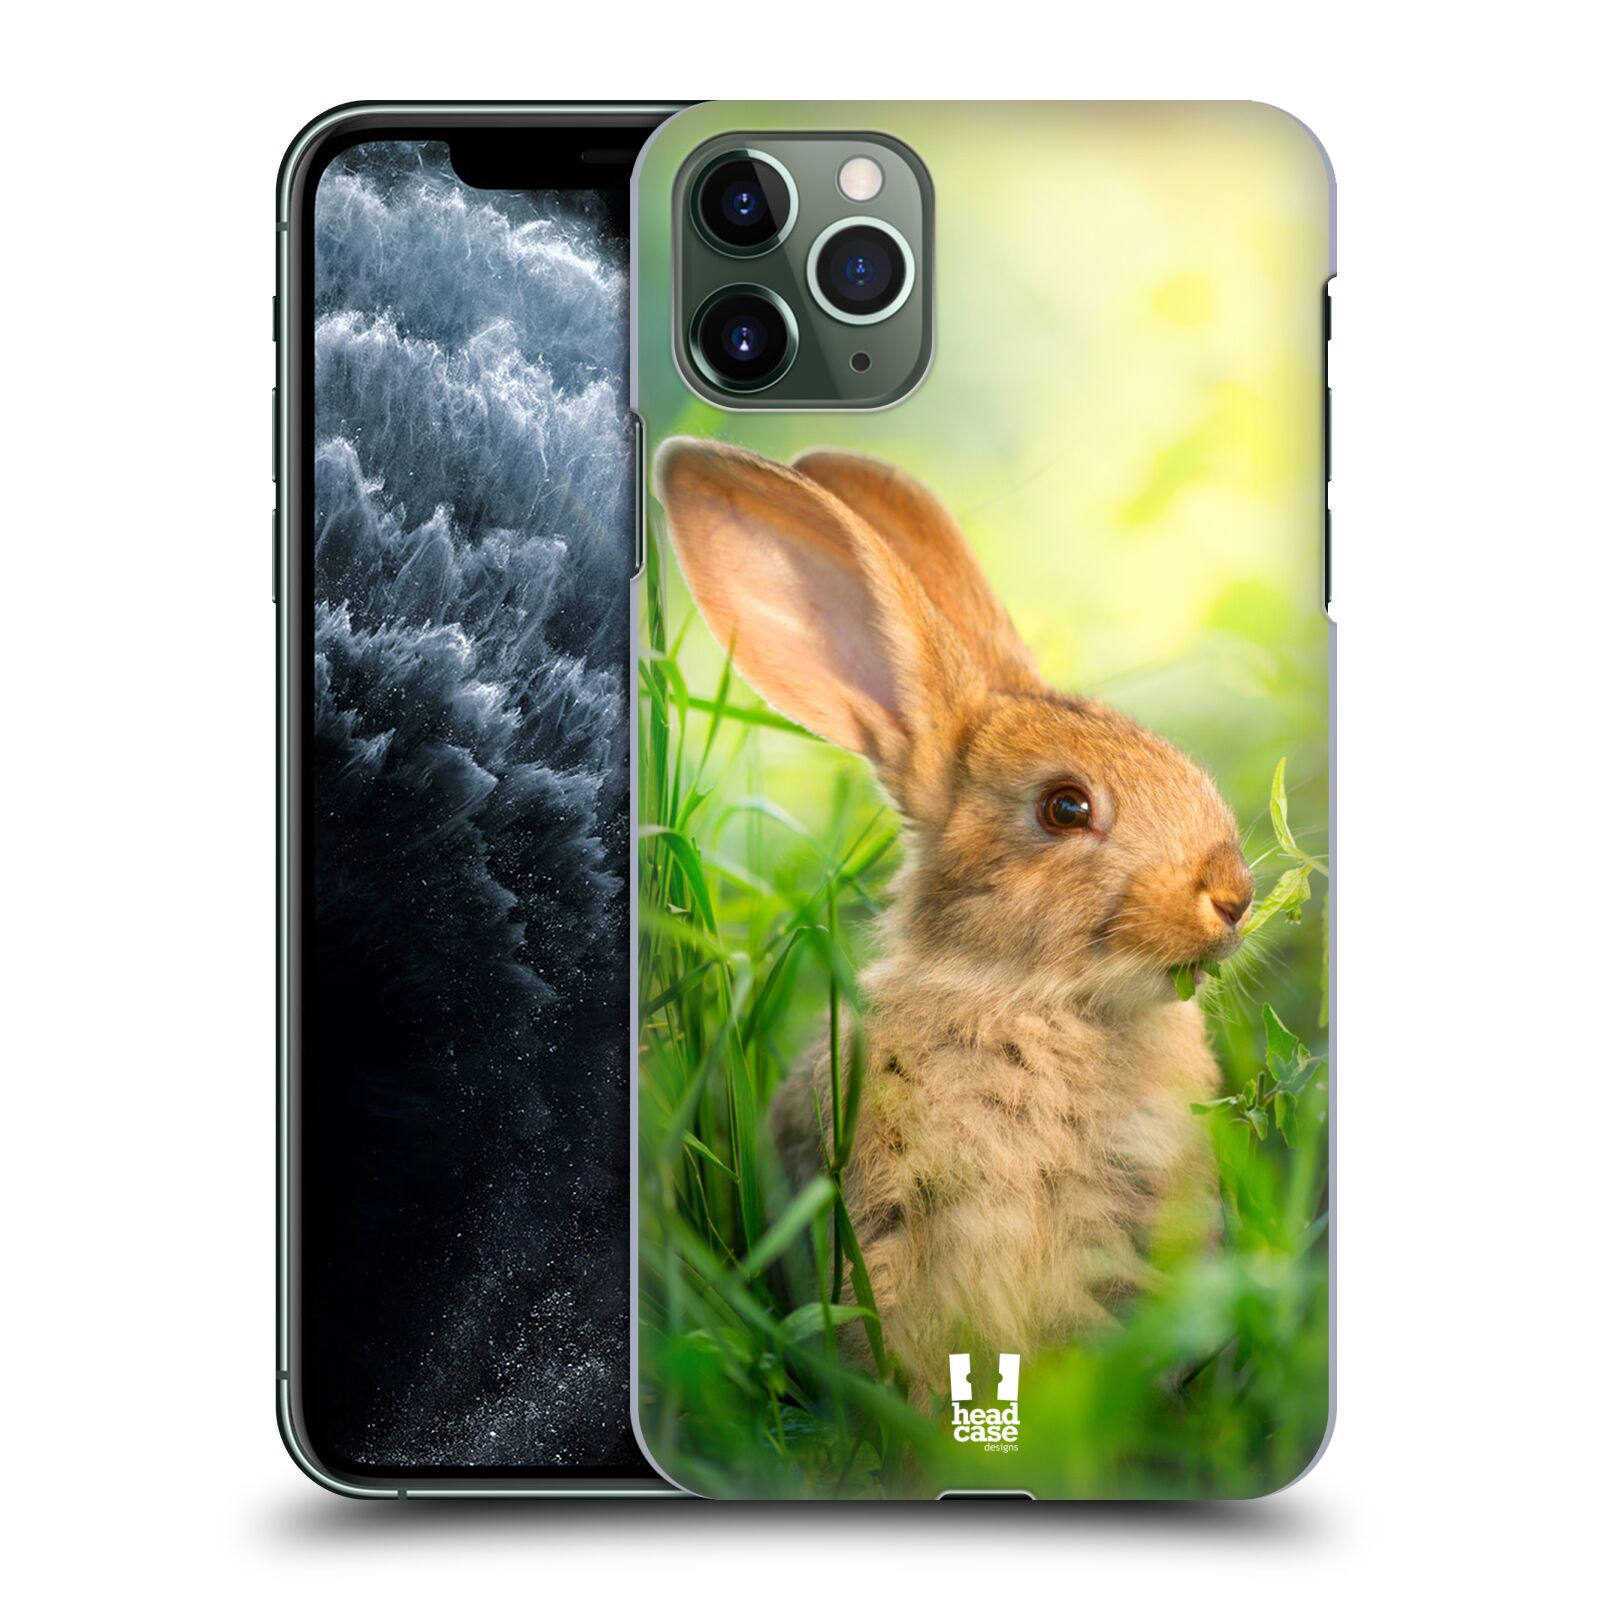 Pouzdro na mobil Apple Iphone 11 PRO MAX - HEAD CASE - vzor Divočina, Divoký život a zvířata foto ZAJÍČEK V TRÁVĚ ZELENÁ